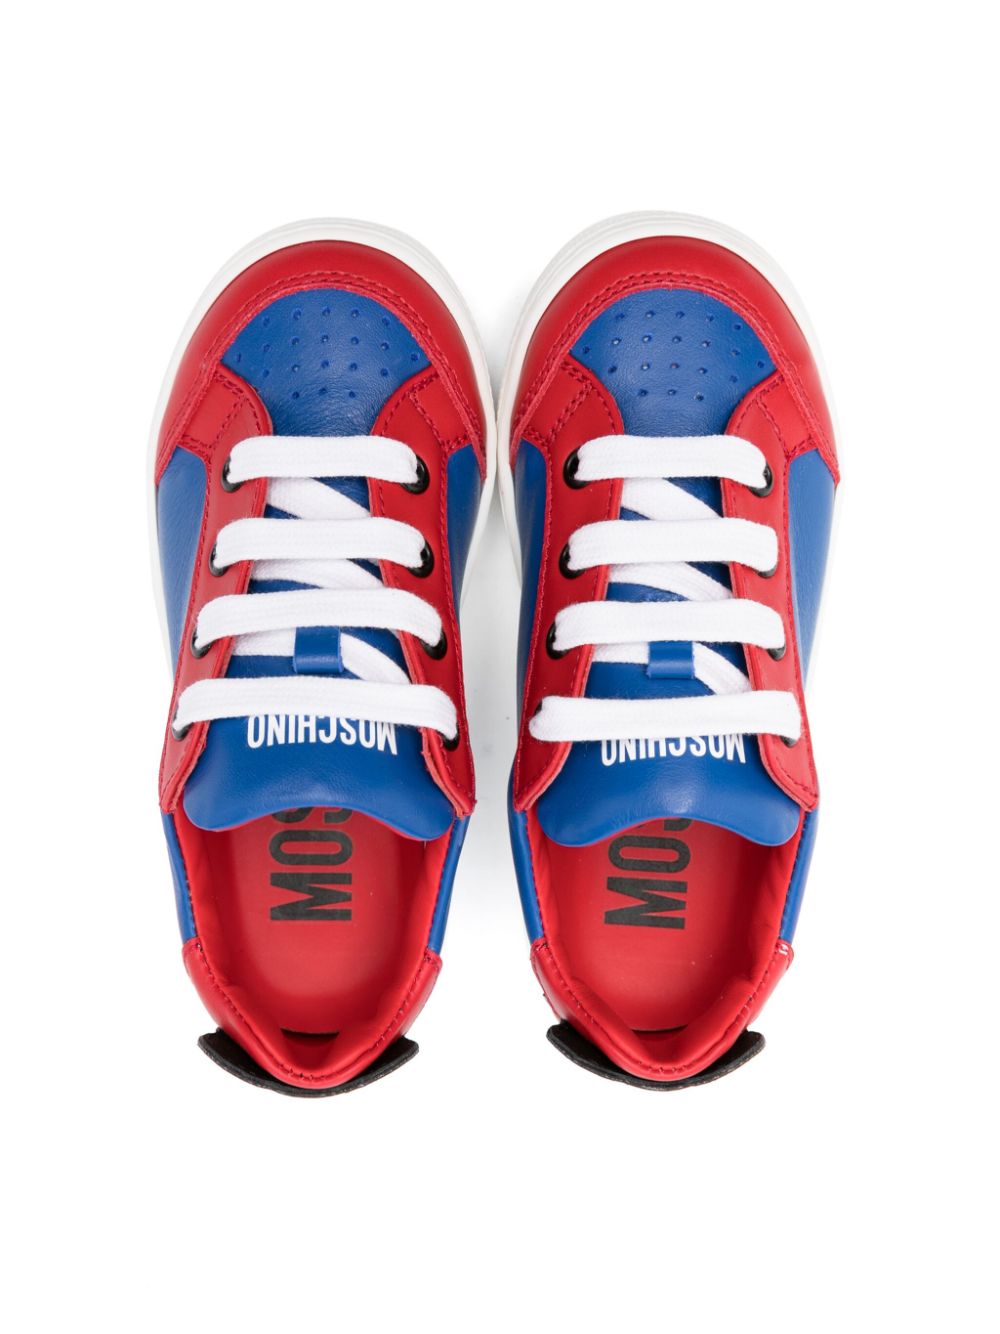 Sneakers blu e rosso per bambino